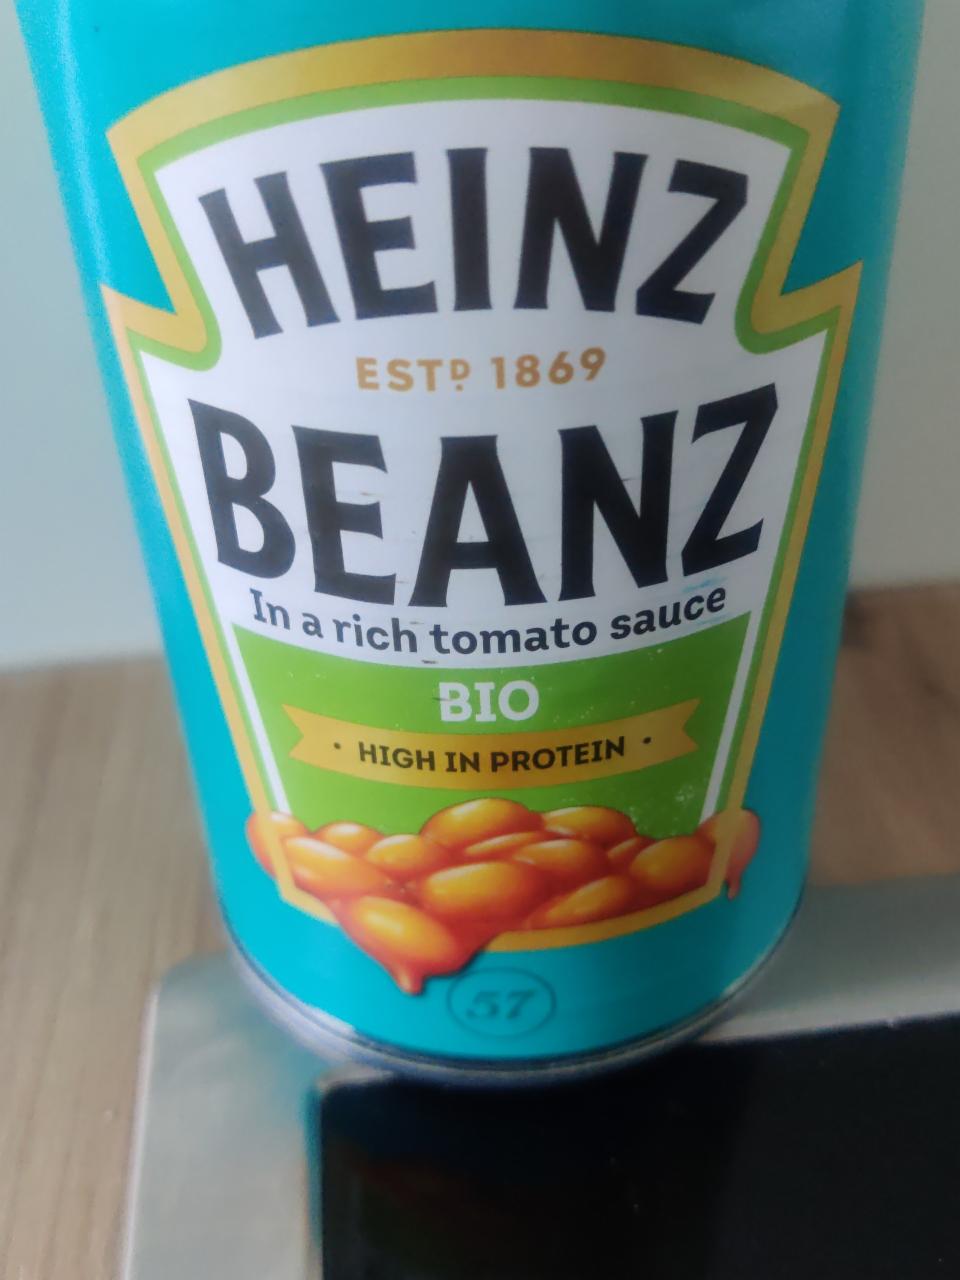 Fotografie - Heinz Beanz In rich tomato sauce BIO